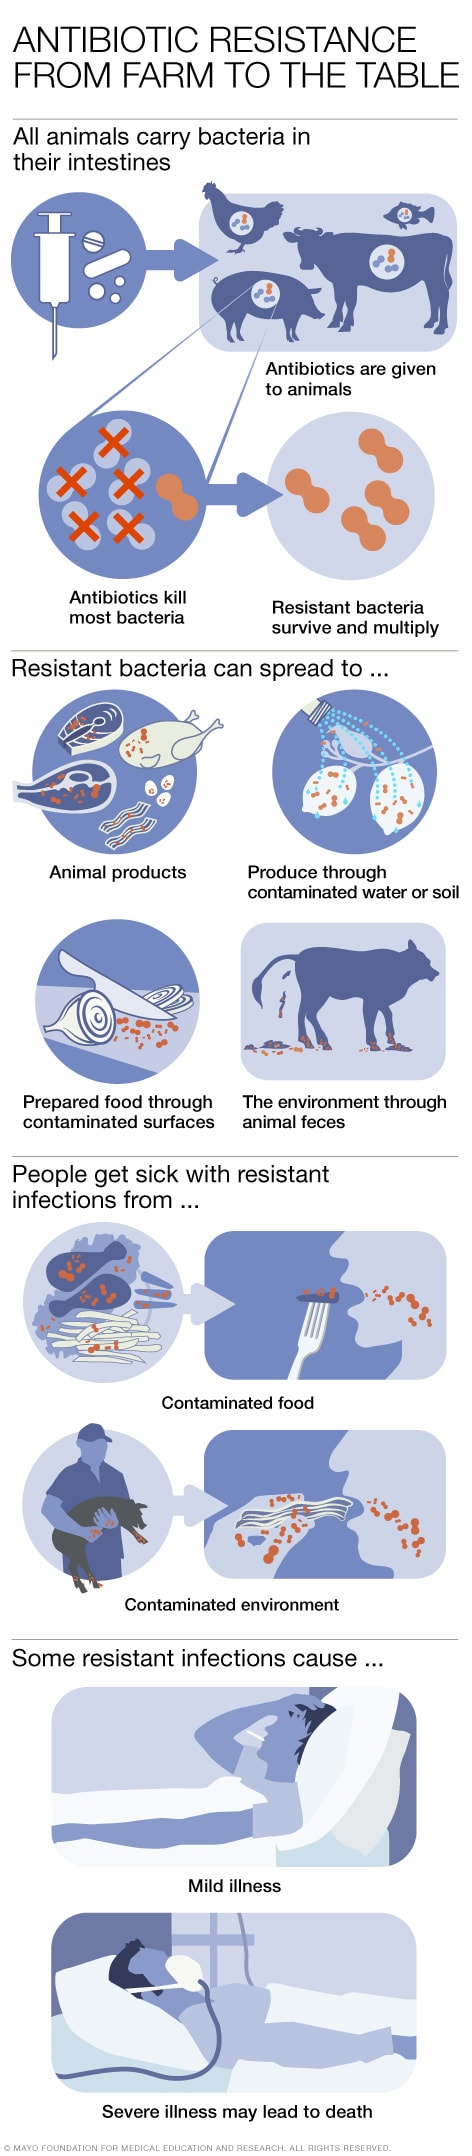 食用动物使用抗生素